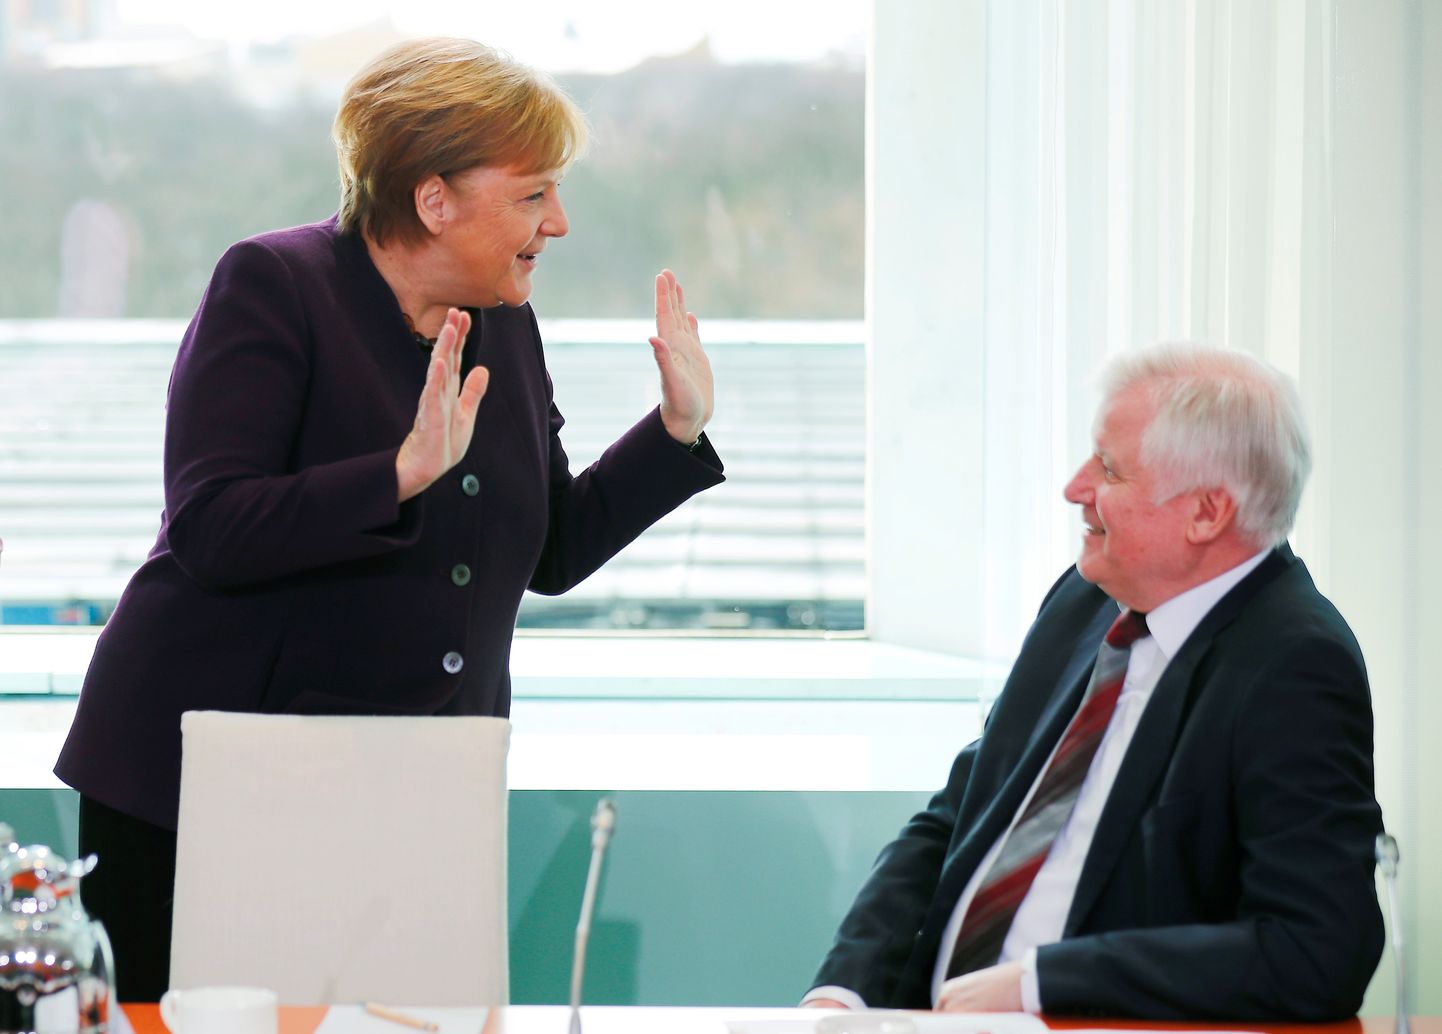 Saksa kantsler Angela Merkel selgitab siseminister Horst Seehoferile, et käesurumine ei ole kõige parem mõte.